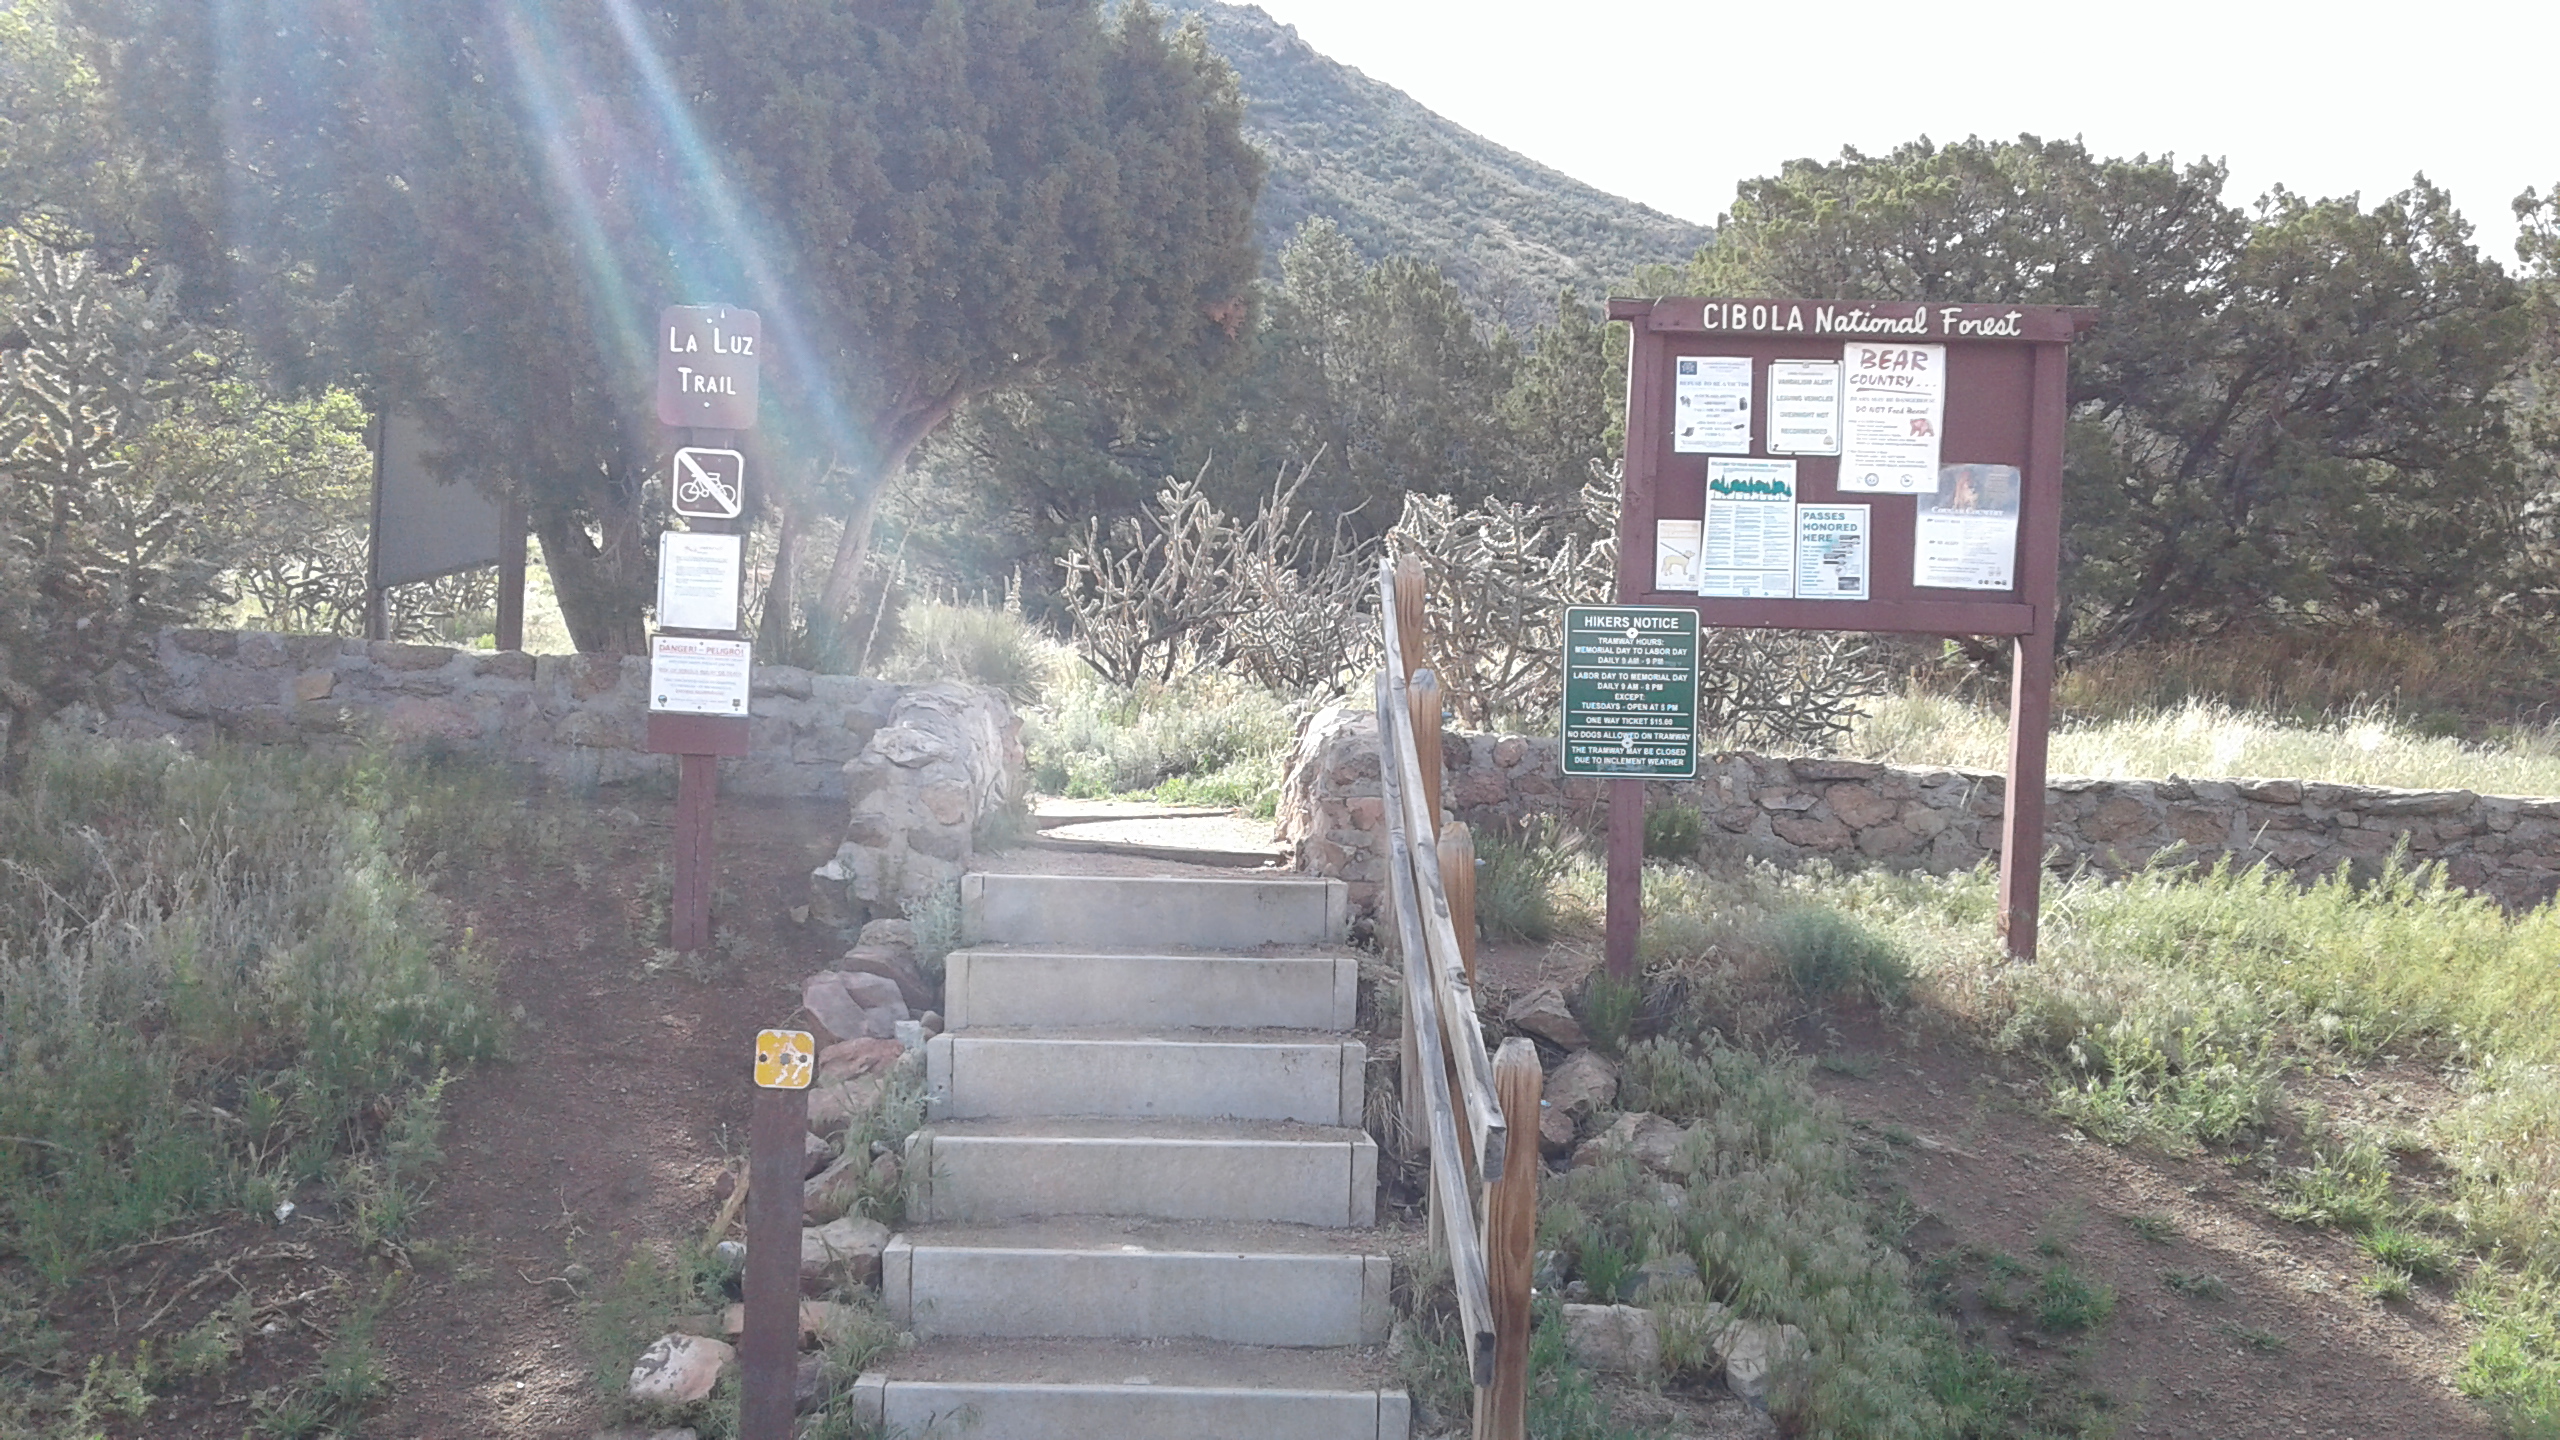 Day Hike: Domingo Baca Trail to TWA Canyon ~ Sandia Mountains ~  Albuquerque, New Mexico, USA